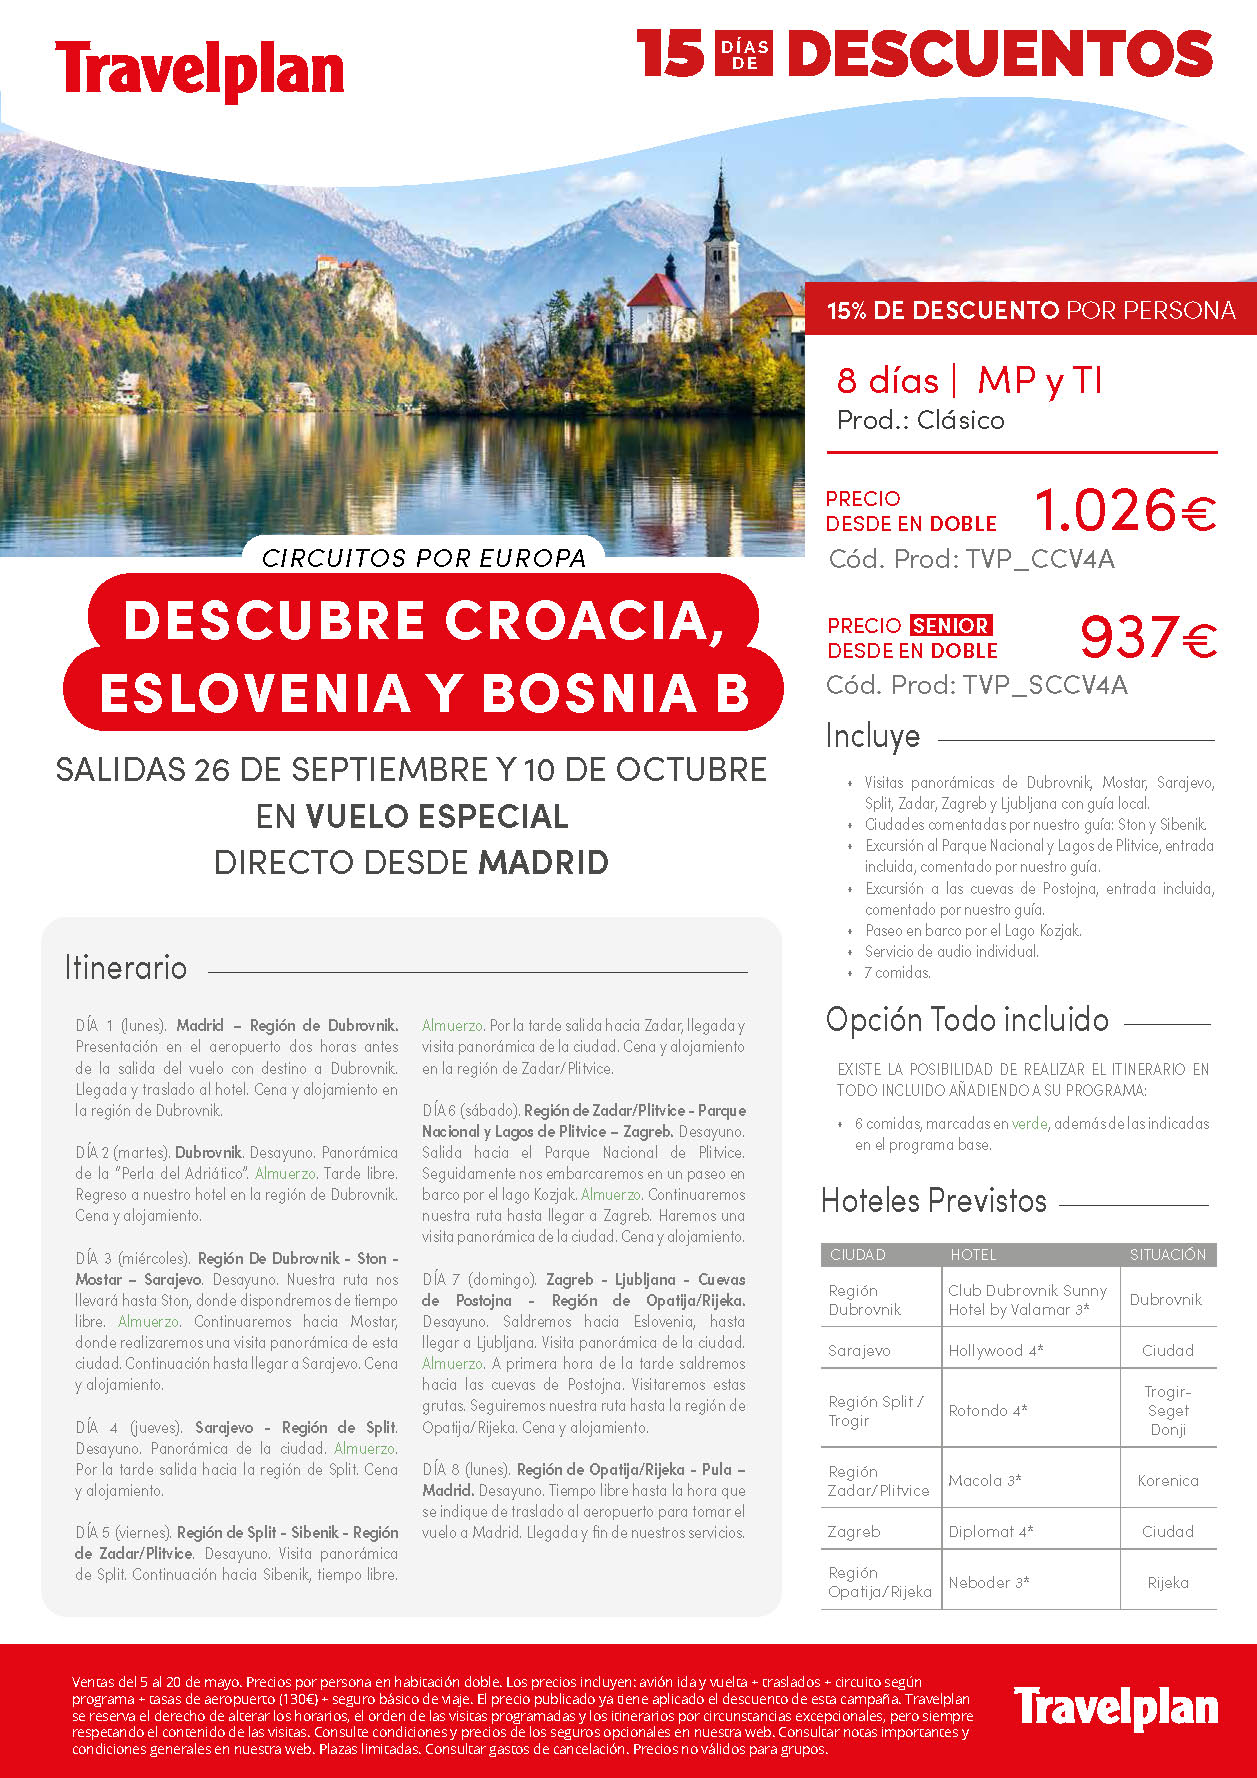 Oferta Travelplan Mayo 2022 Descubre Croacia Eslovenia y Bosnia B Todo Incluido Senior 8 dias vuelo especial directo desde Madrid salidas Septiembre y Octubre de 2022